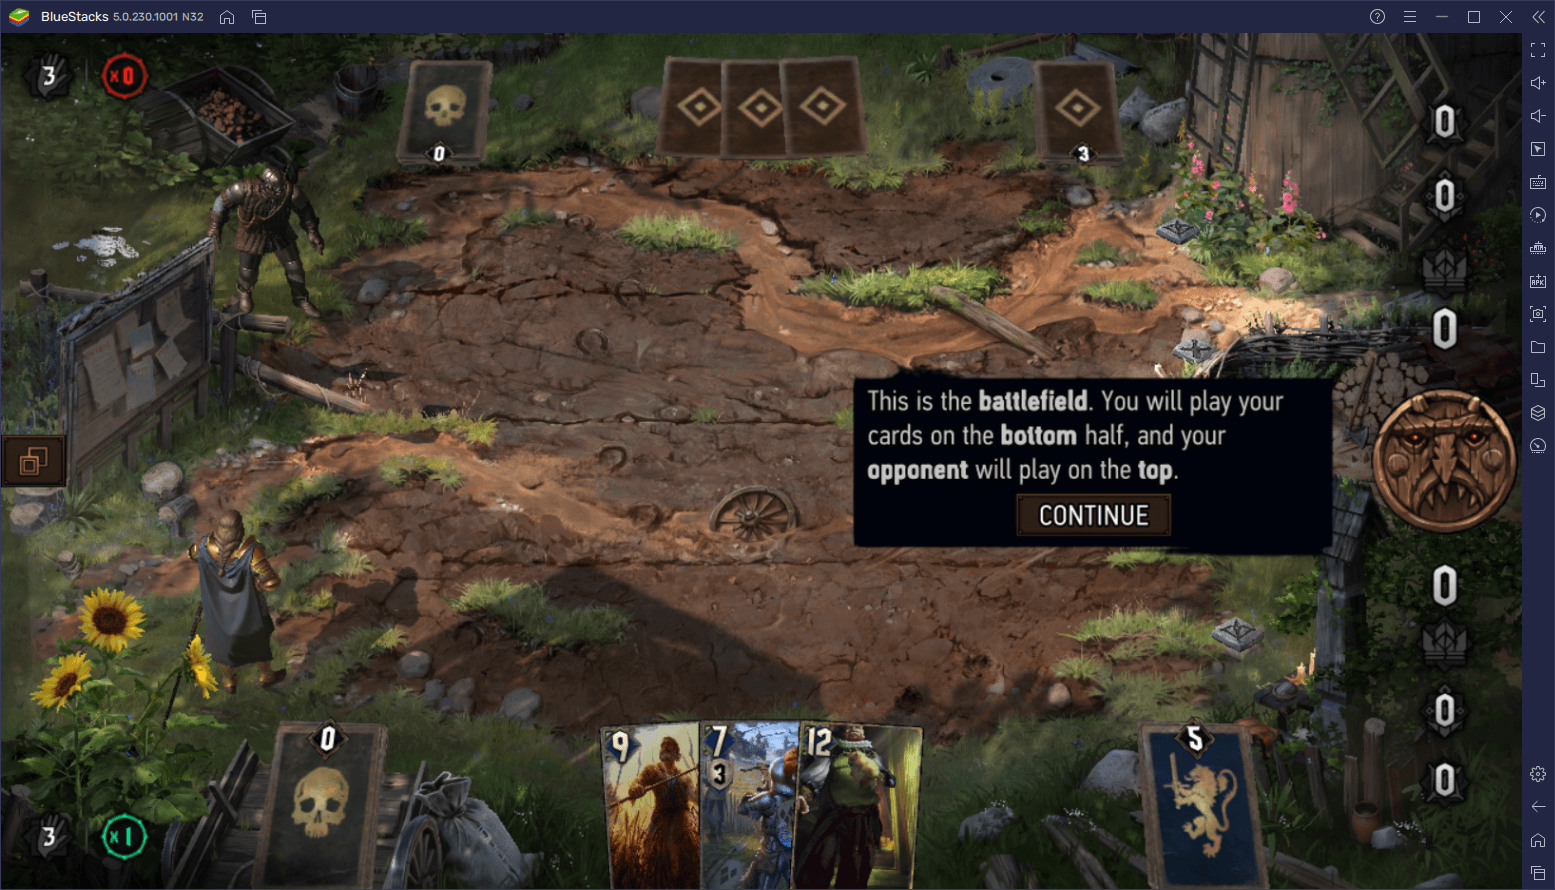 كيف تلعب لعبة The Witcher Tales: Thronebreaker على جهاز الكمبيوتر مجانًا